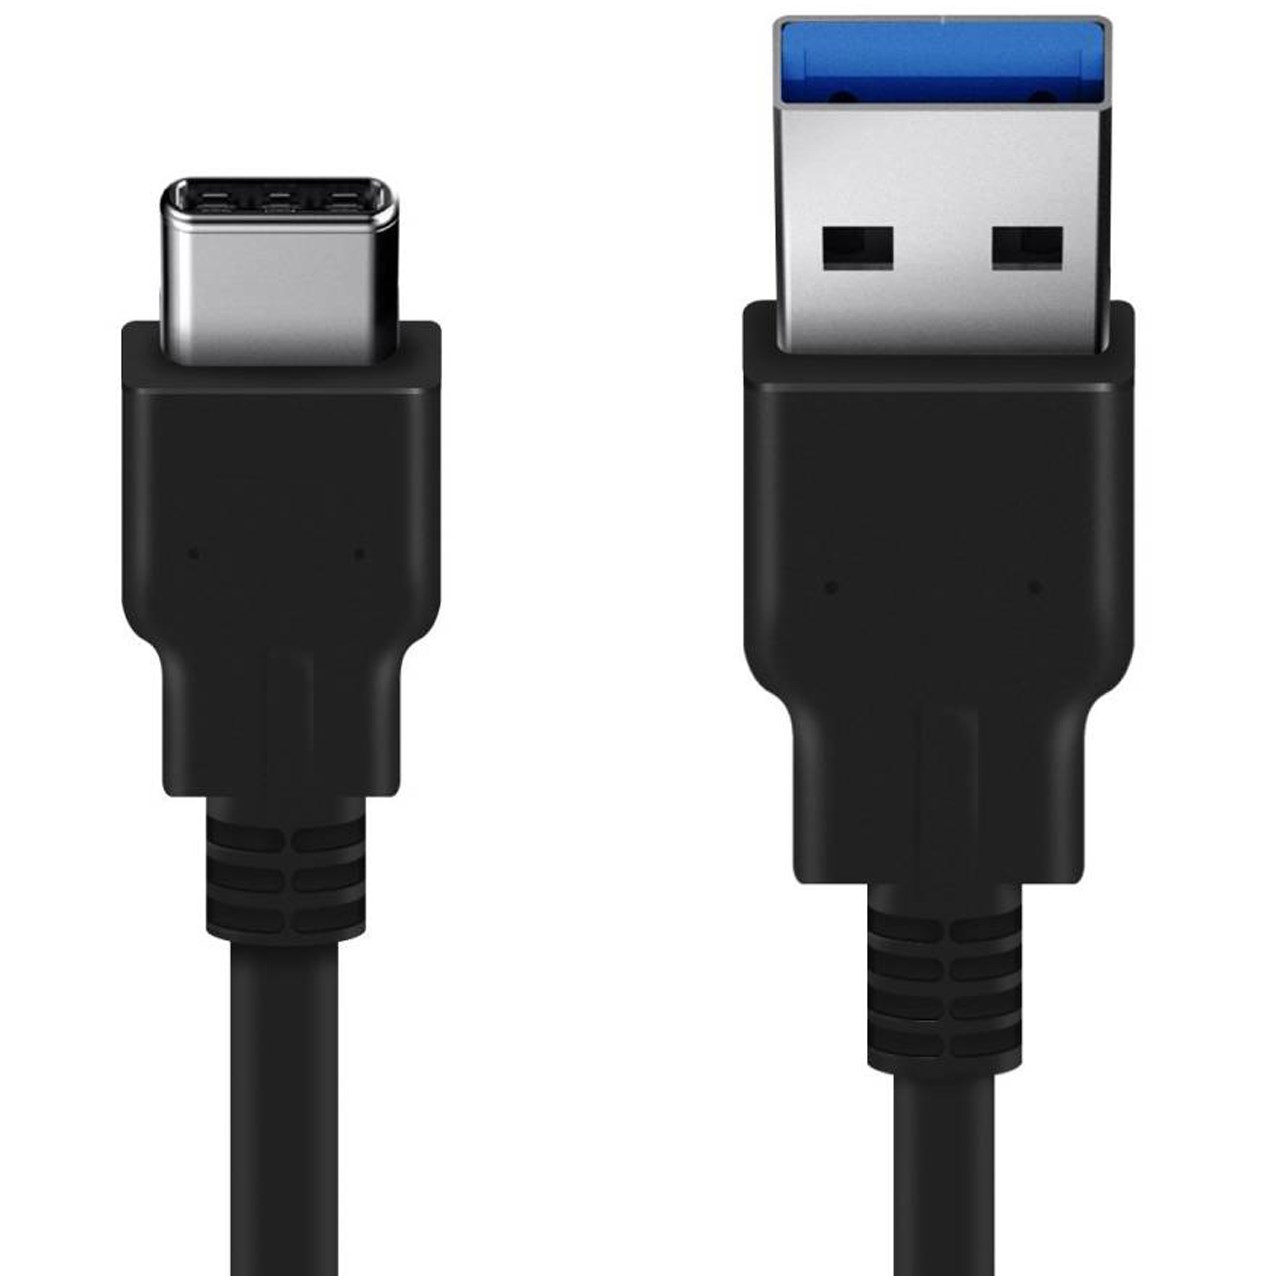 کابل تبدیل Type-C به USB 3.0 ای پی لینک مدل Oneplus به طول 1 متر